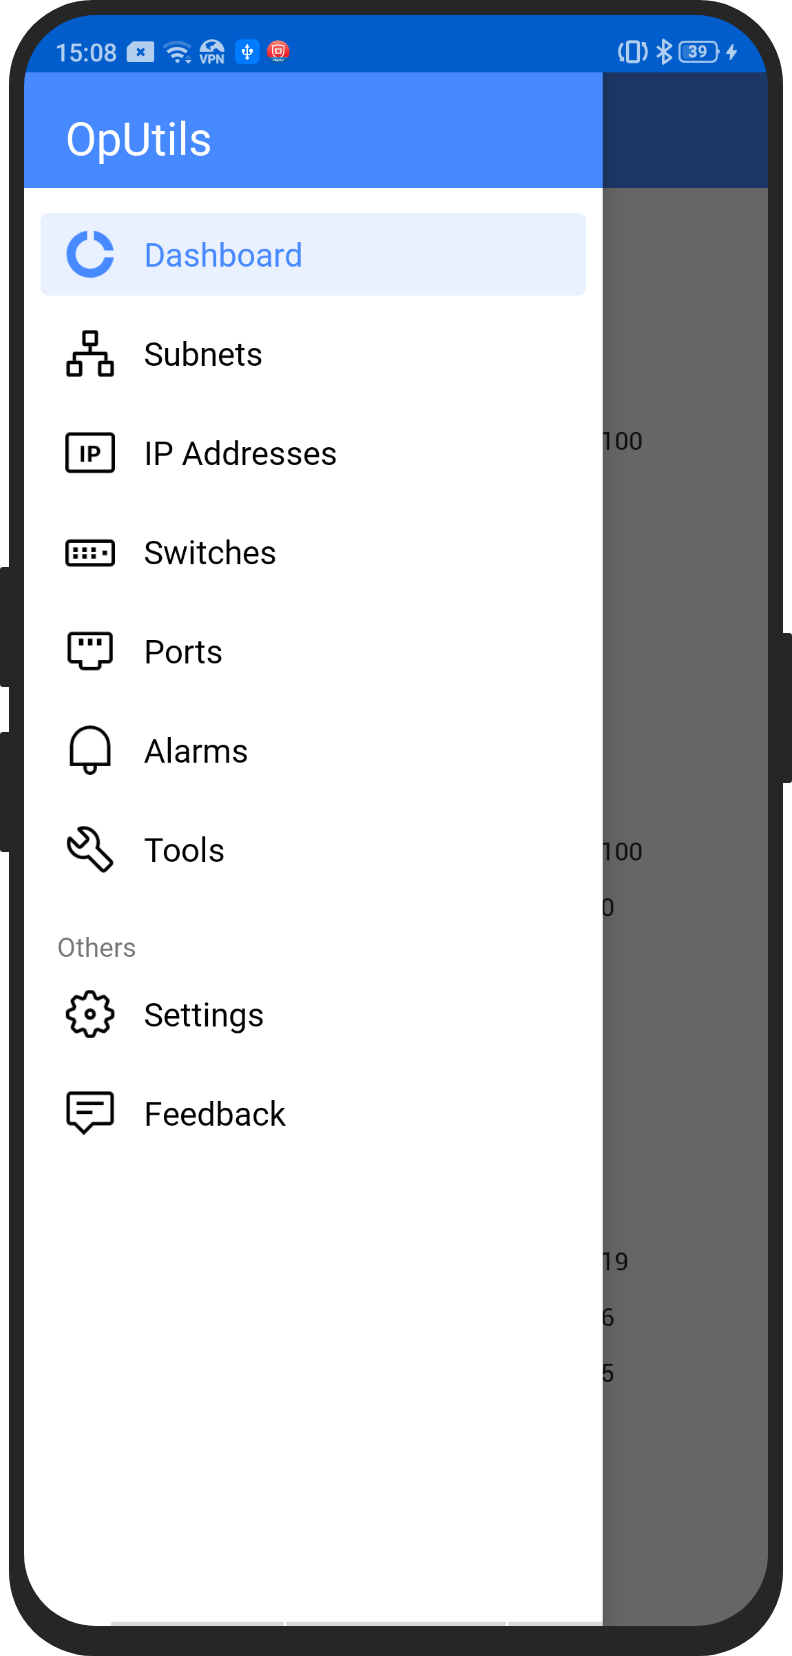 Vista móvil android de las herramientas de OpUtils